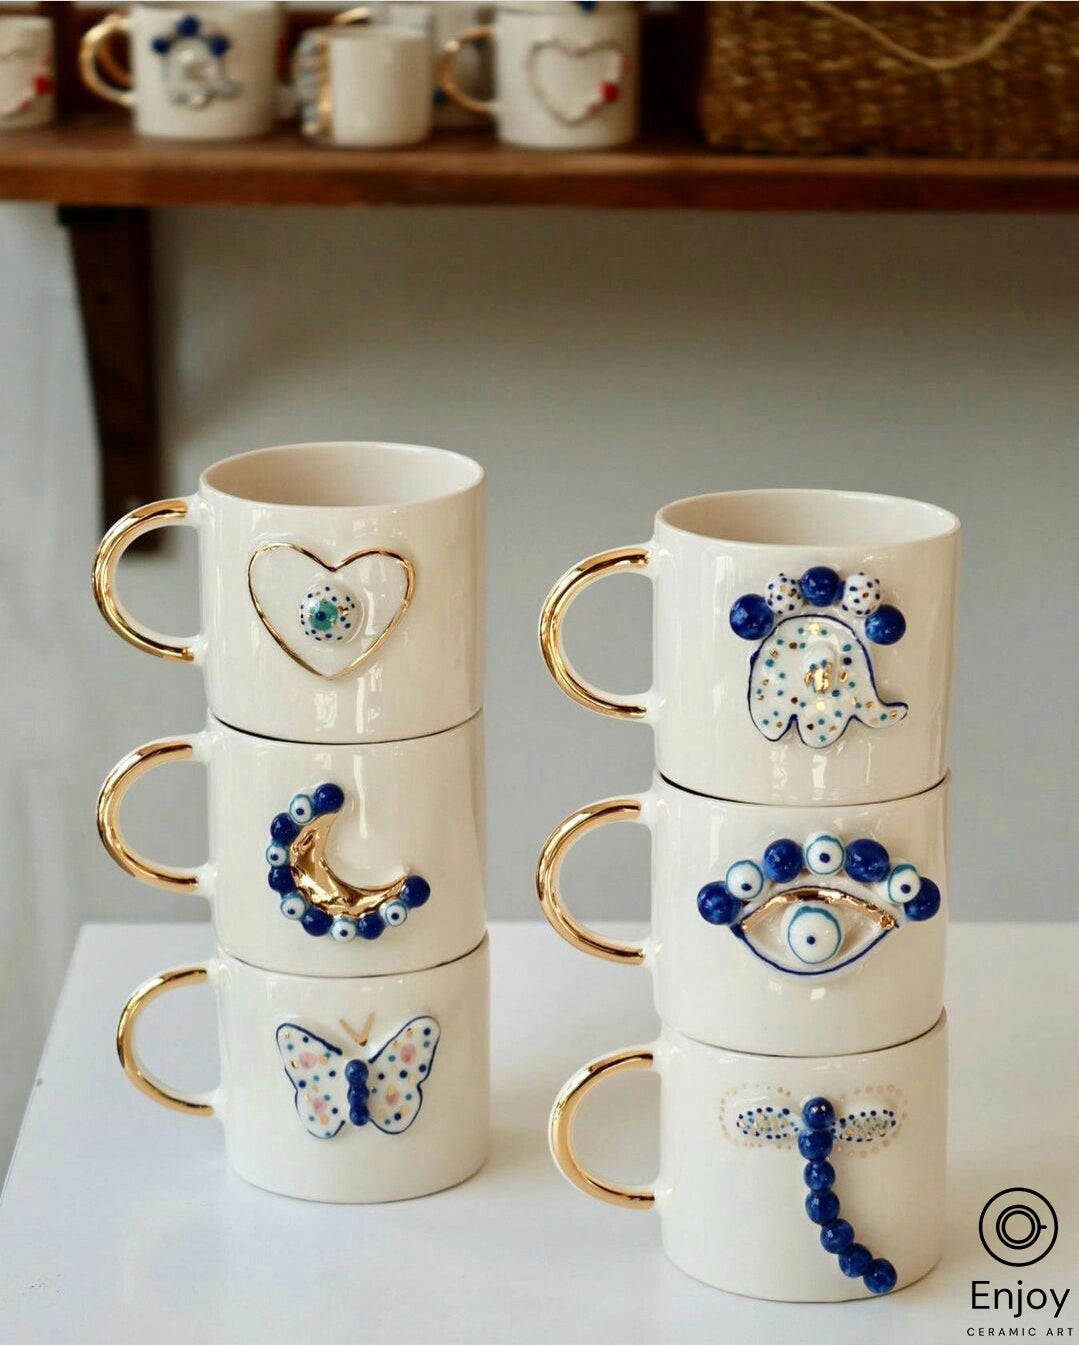 Handmade Ceramic 'Up' Movie Coffee Mug - 10 Oz Disney Pixar Coffee